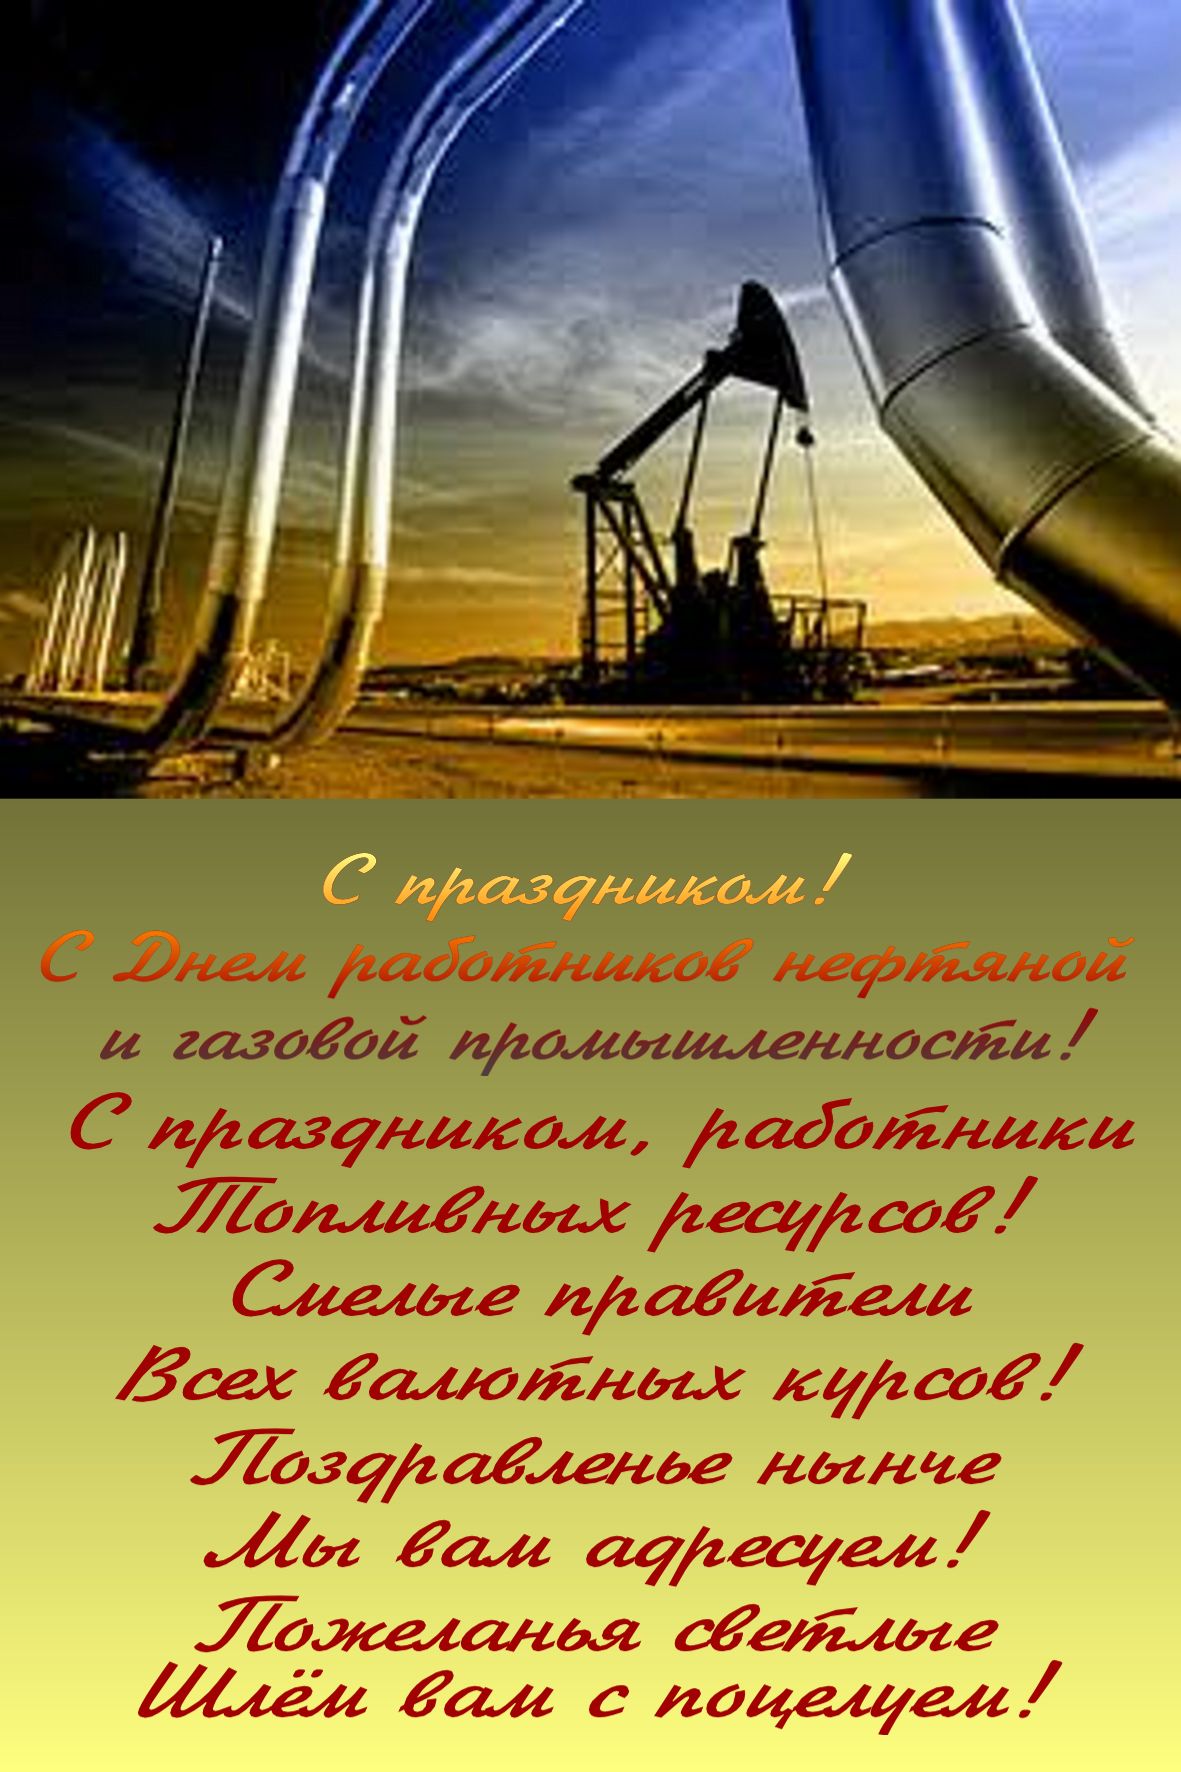 Поздравление С Днем Нефтяников Открытки